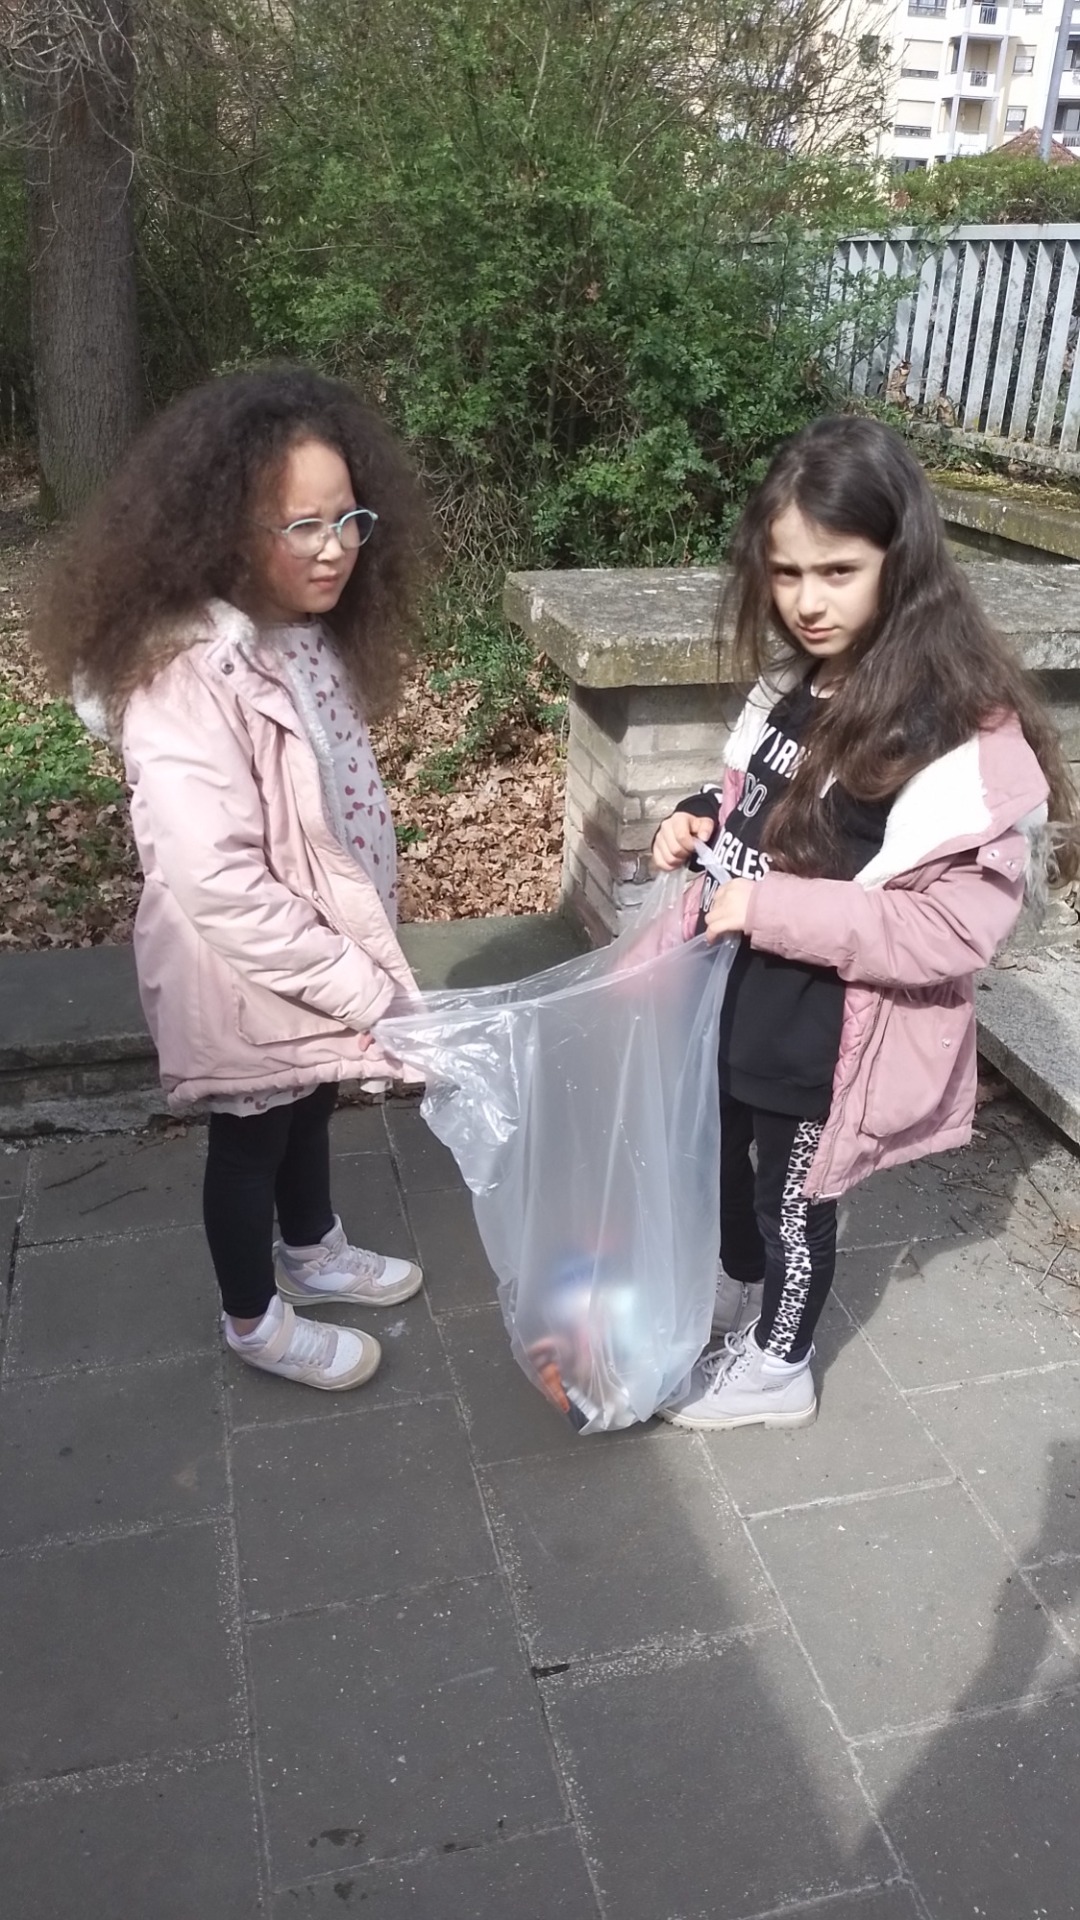 Die Müll-Aufräumaktion der OGS-Kinder - Bild 1